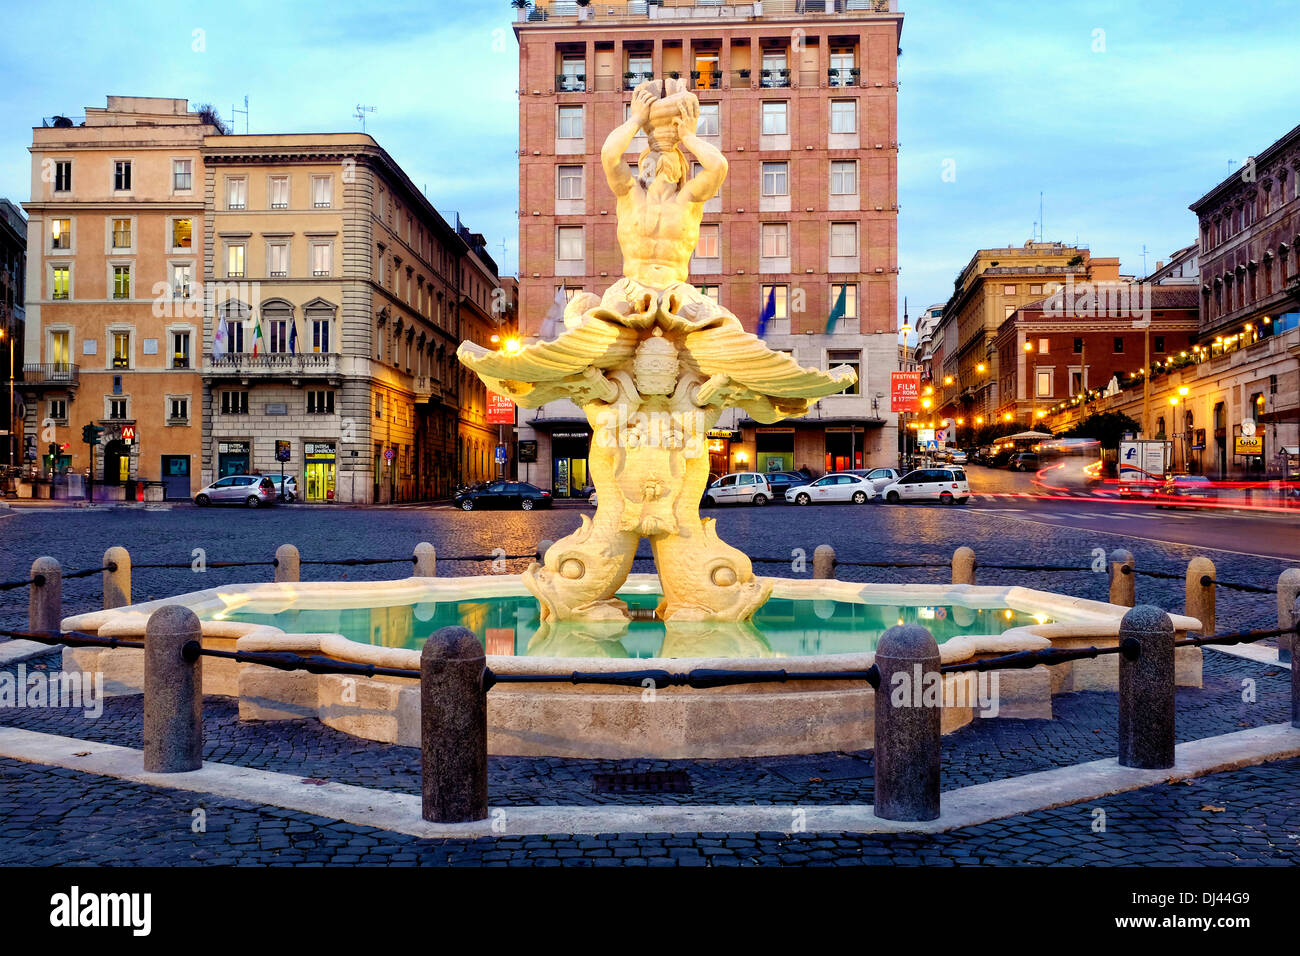 Newly restored Fontana del Tritone, Rome Italy Stock Photo